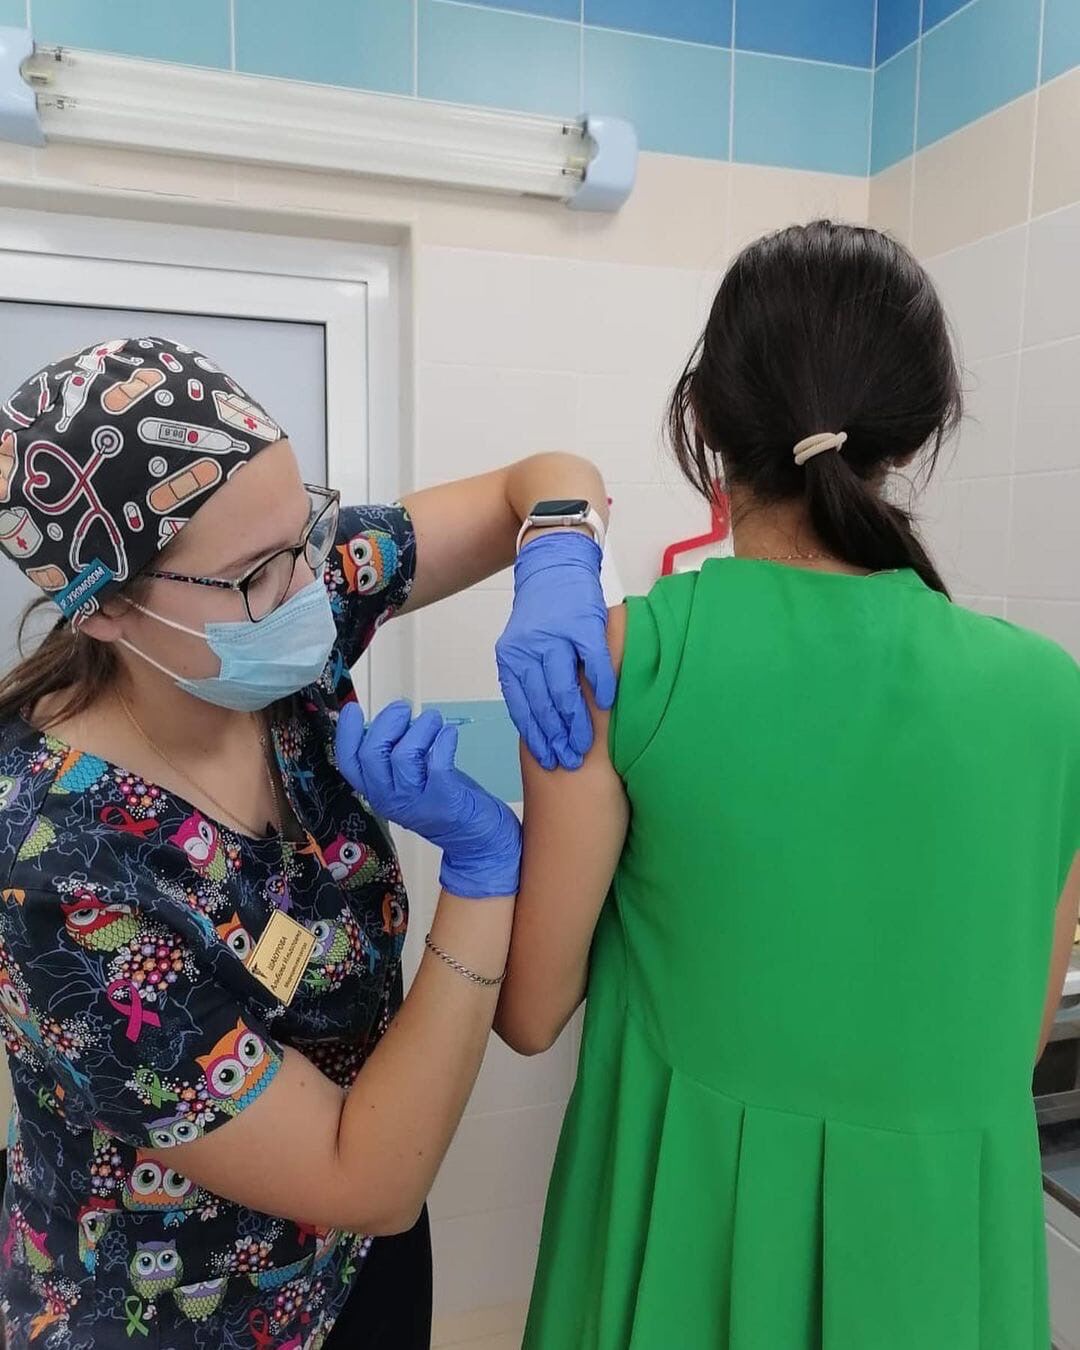 14674 жителя Сармановского района уже сделали прививку от новой коронавирусной инфекции